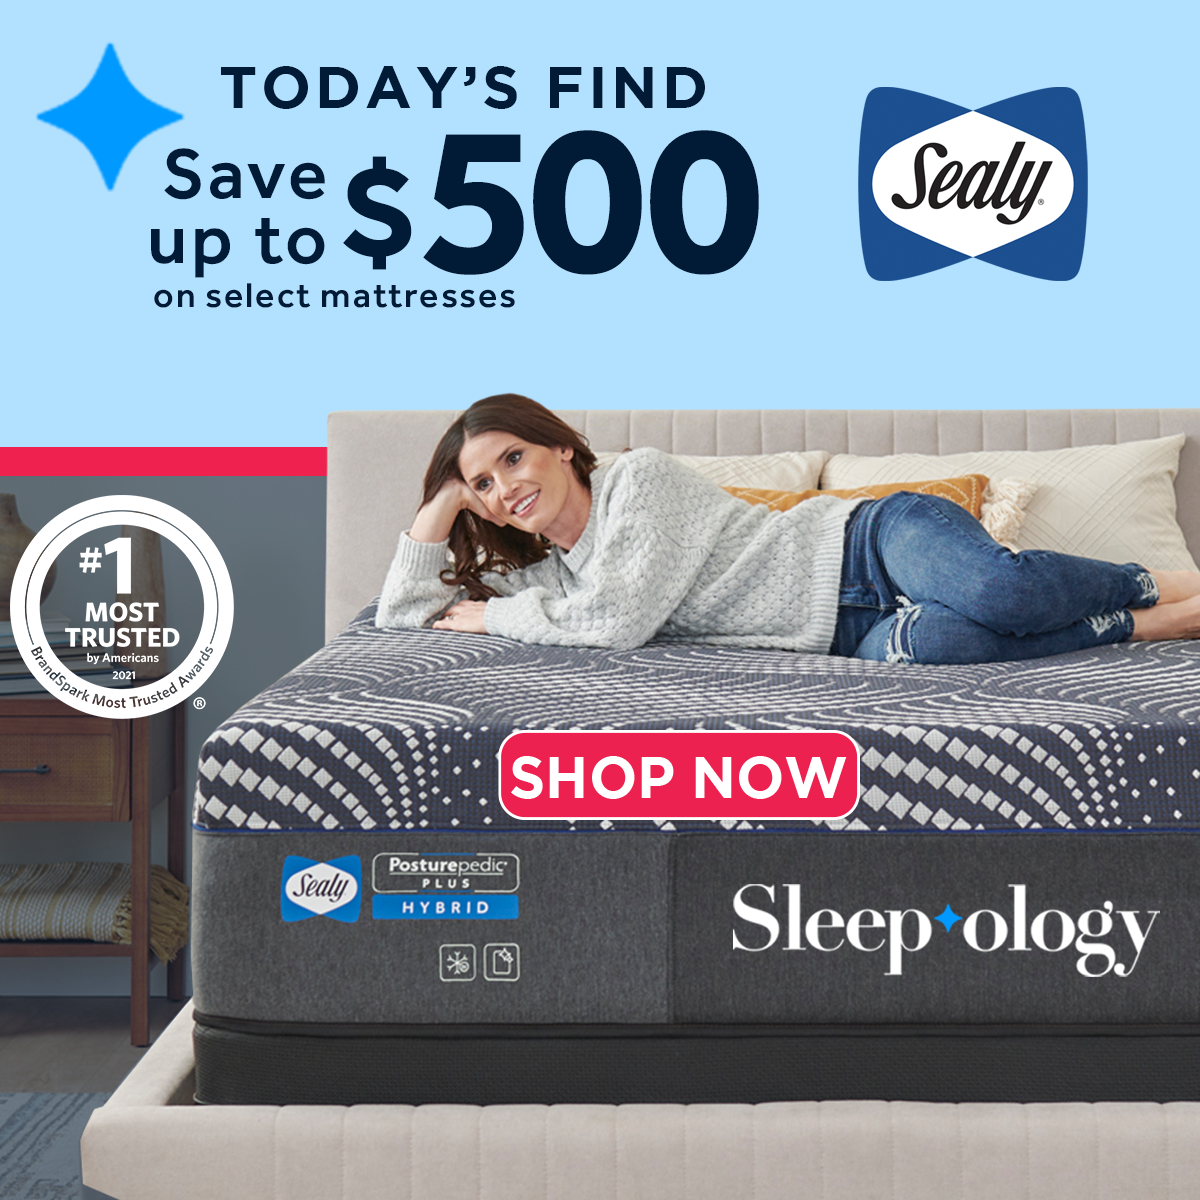 Sleepology Sealy Mattress on Sale Save $500